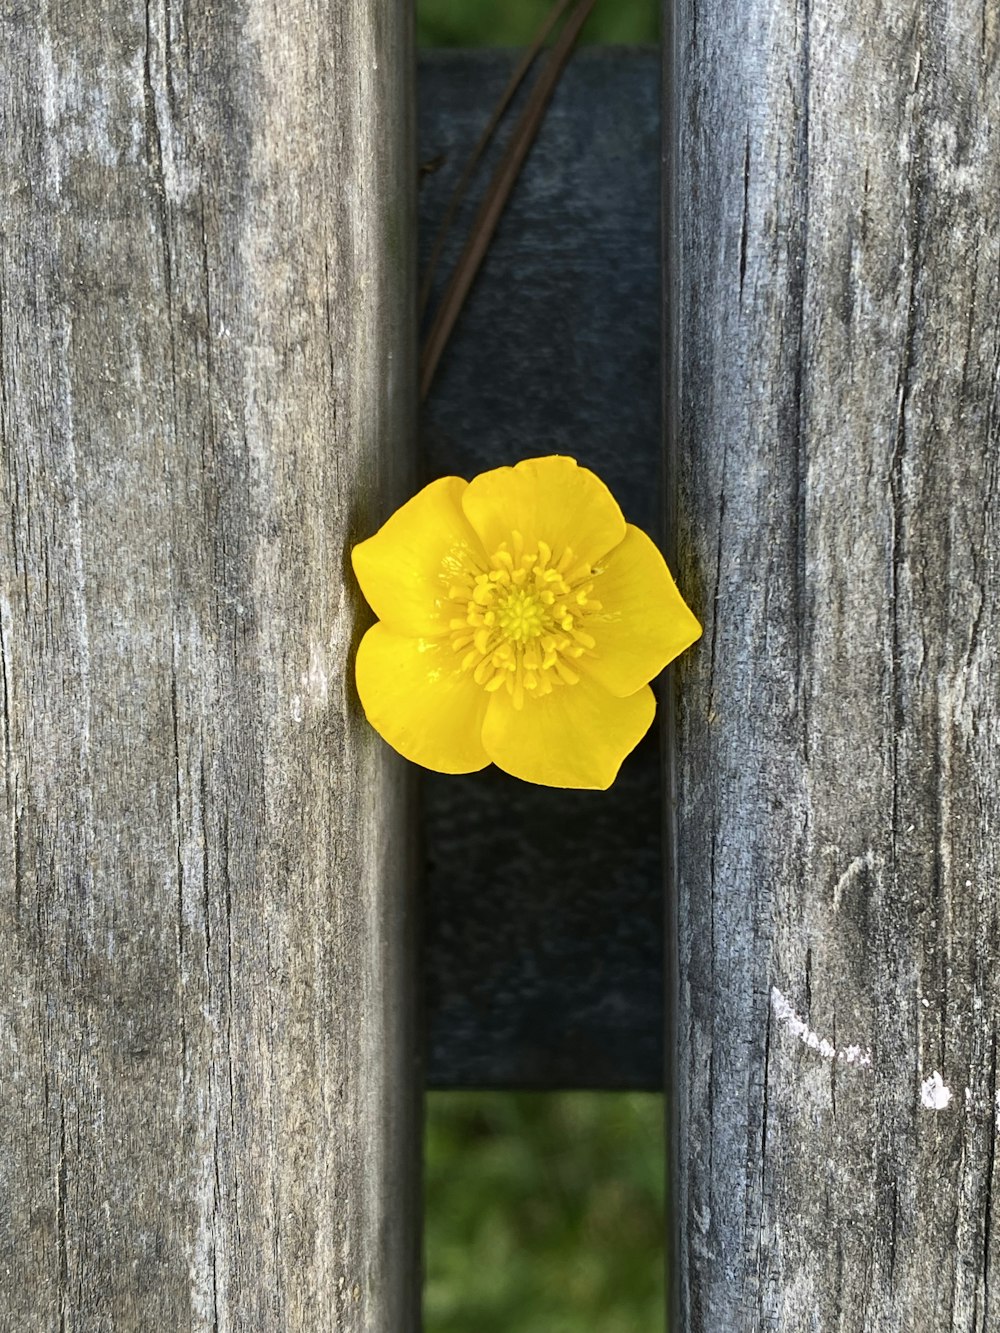 木の柵の上に座っている黄色い花